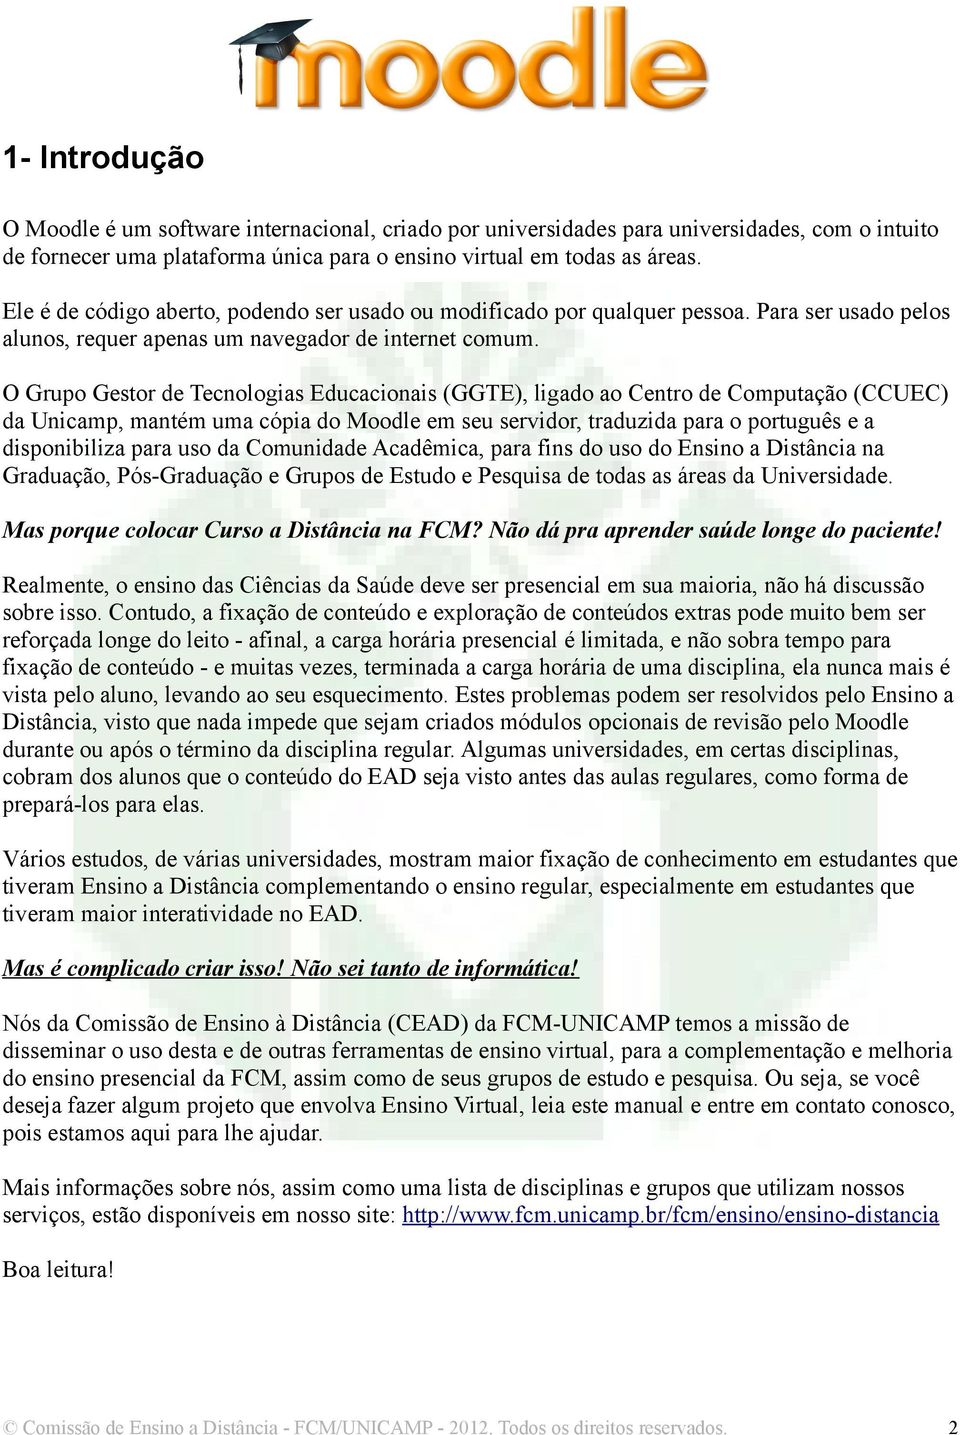 O Grupo Gestor de Tecnologias Educacionais (GGTE), ligado ao Centro de Computação (CCUEC) da Unicamp, mantém uma cópia do Moodle em seu servidor, traduzida para o português e a disponibiliza para uso